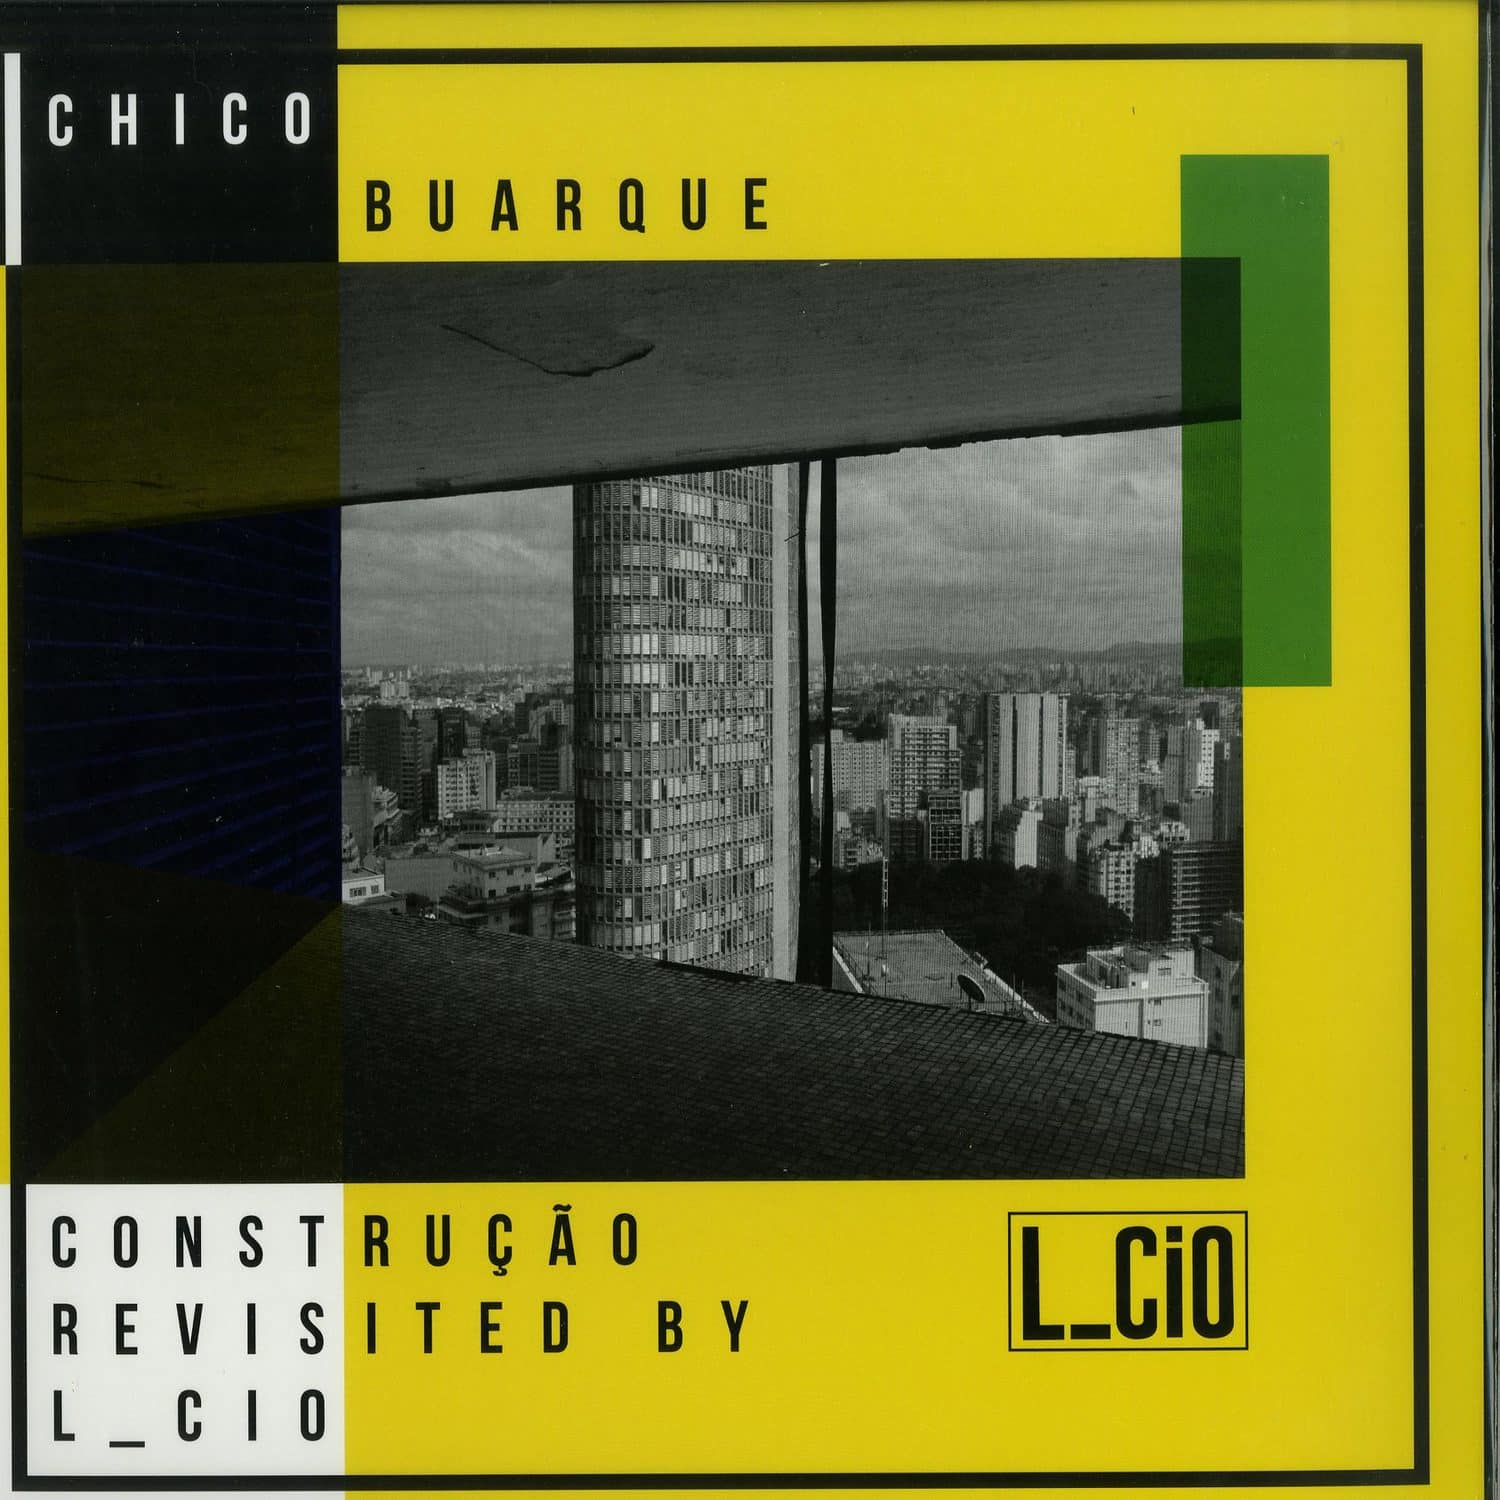 L_Cio - CHICO BUARQUE CONSTRUCAO REVISITED